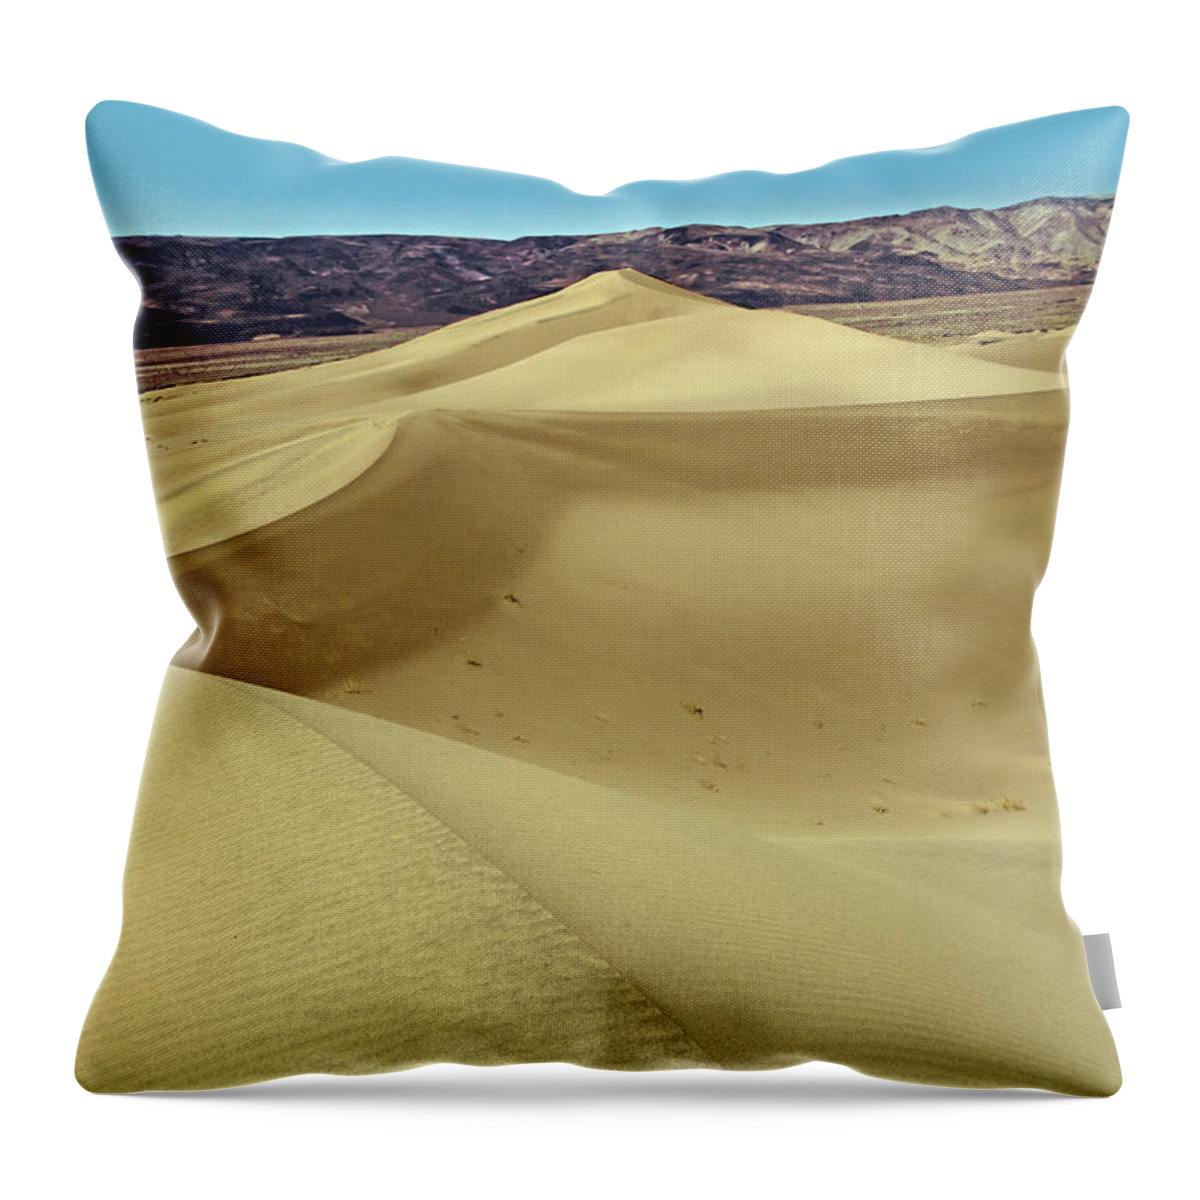 Panamint Dunes Throw Pillow featuring the photograph Panamint Dunes by David Salter